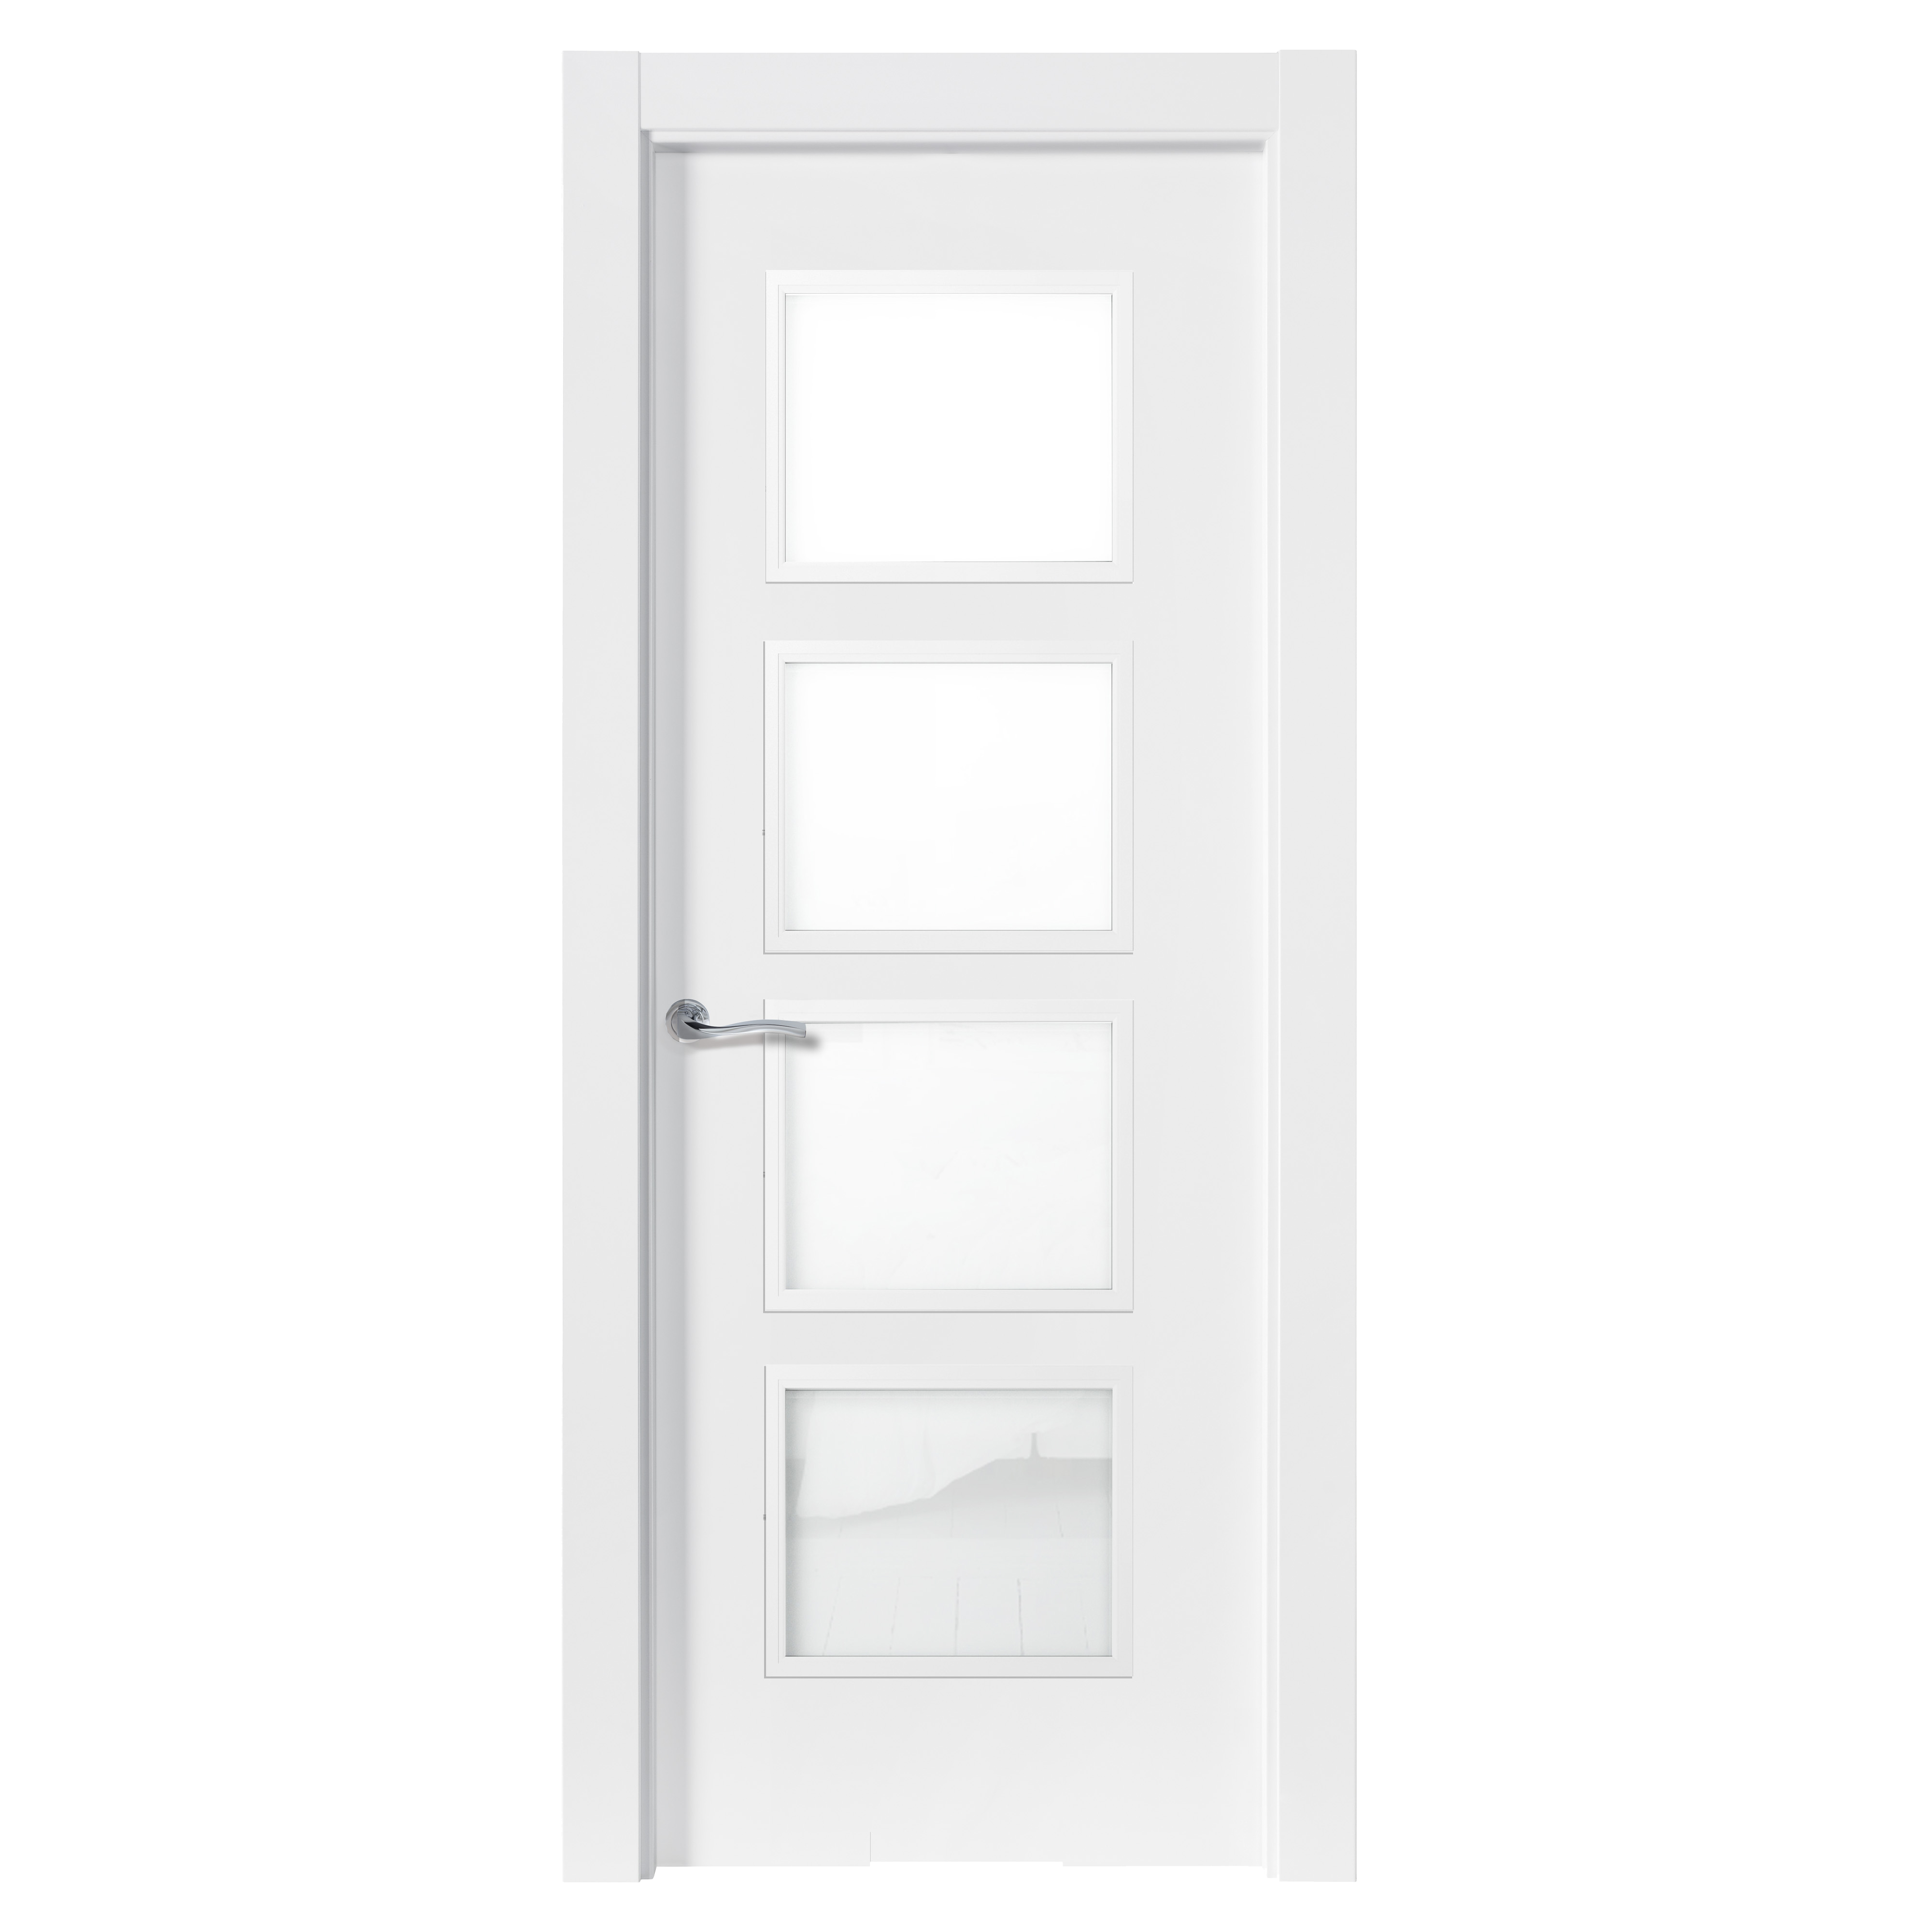 Puerta bari premium blanco apertura izquierda con cristal 9x72.5cm